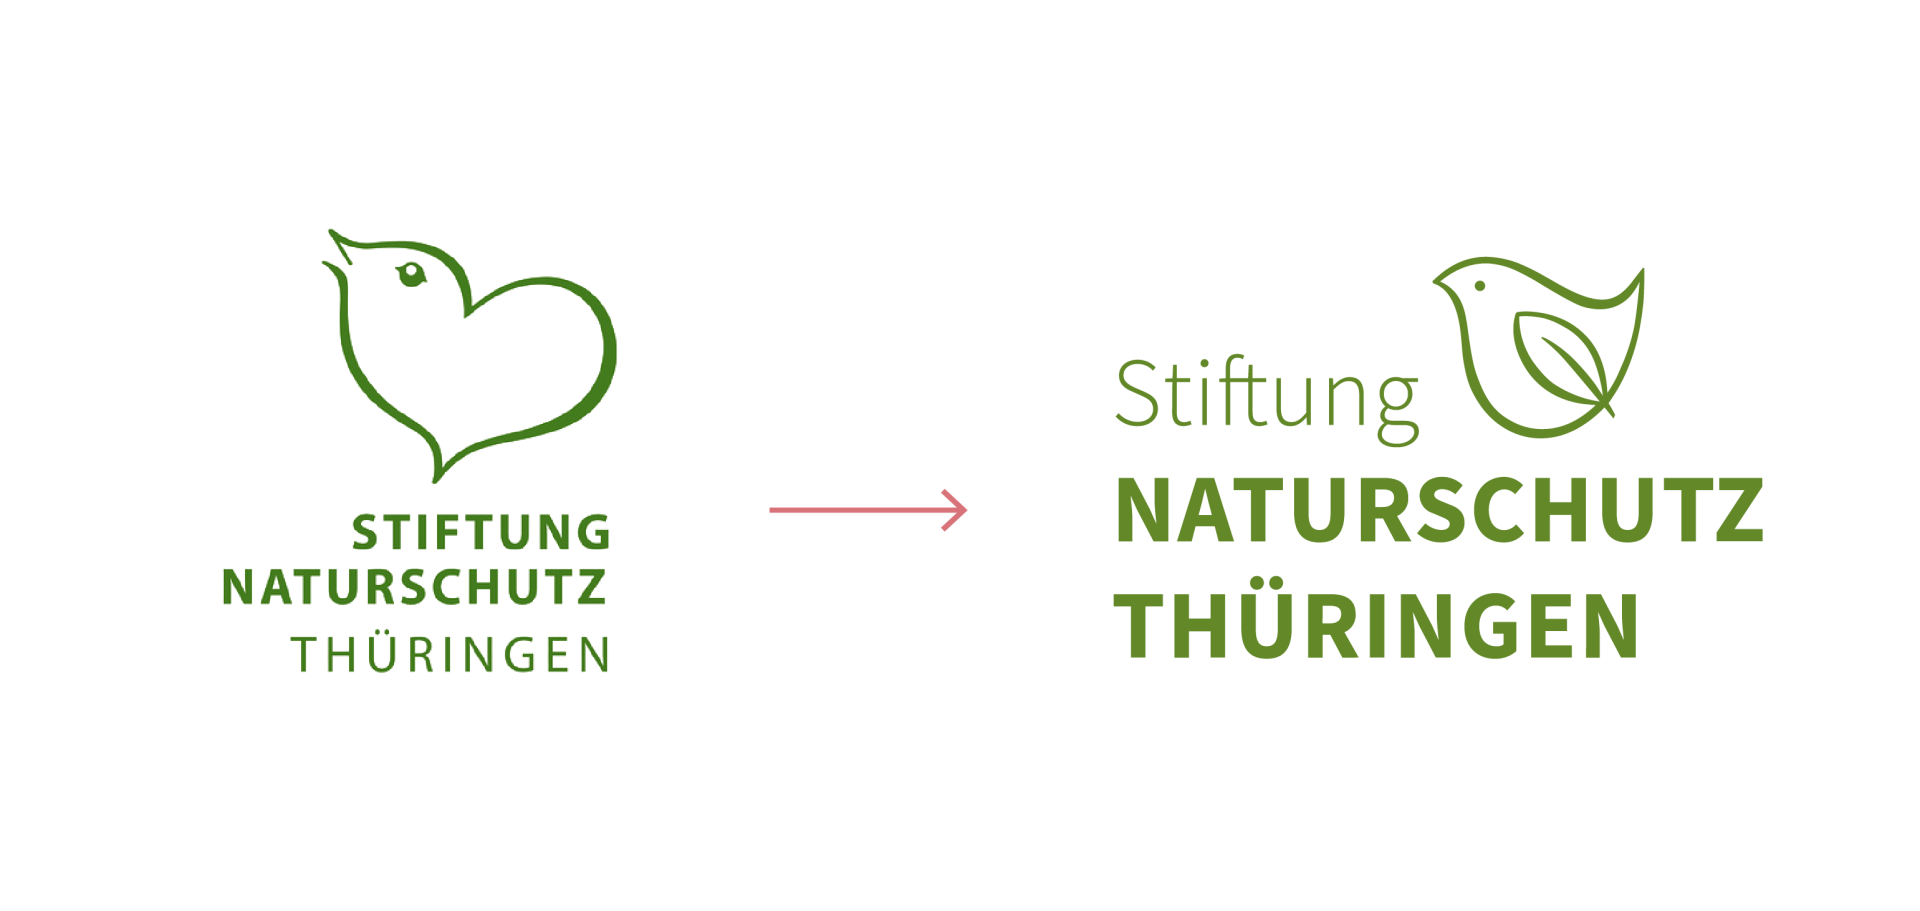 Links die alte, rechts die neue Wort-Bild-Marke der Stiftung Naturschutz Thüringen. Beide haben einen Vogel als Bildmarke.